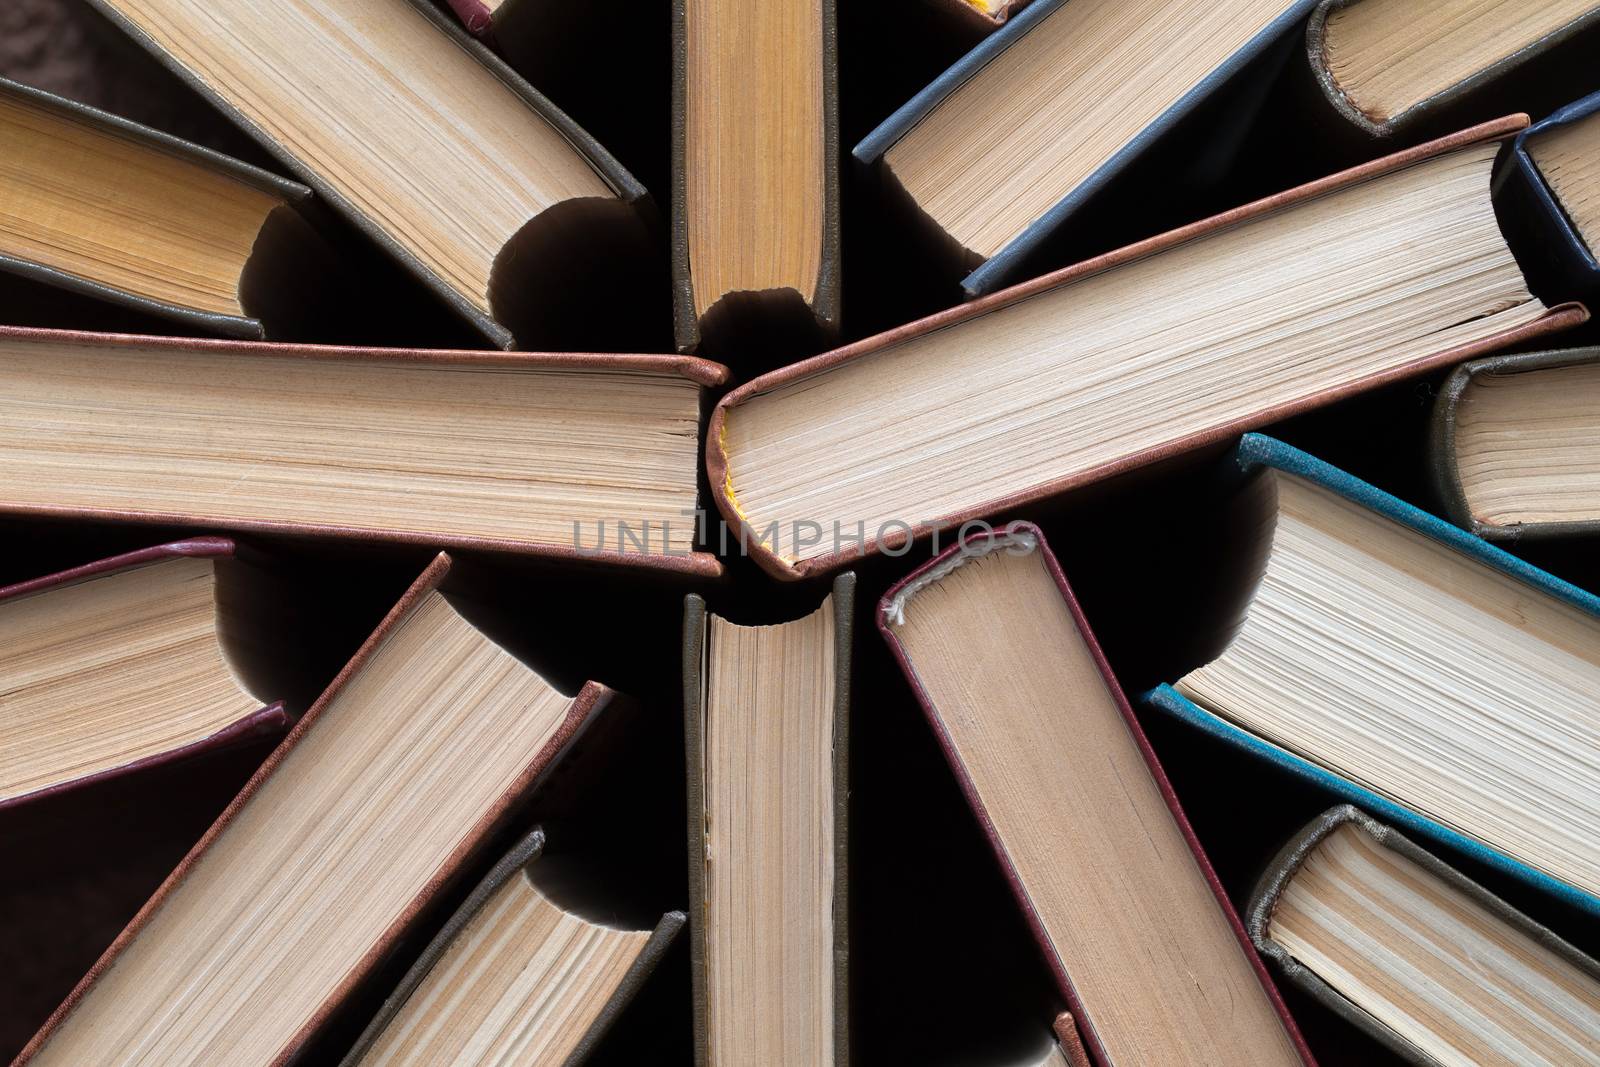  books by Pakhnyushchyy